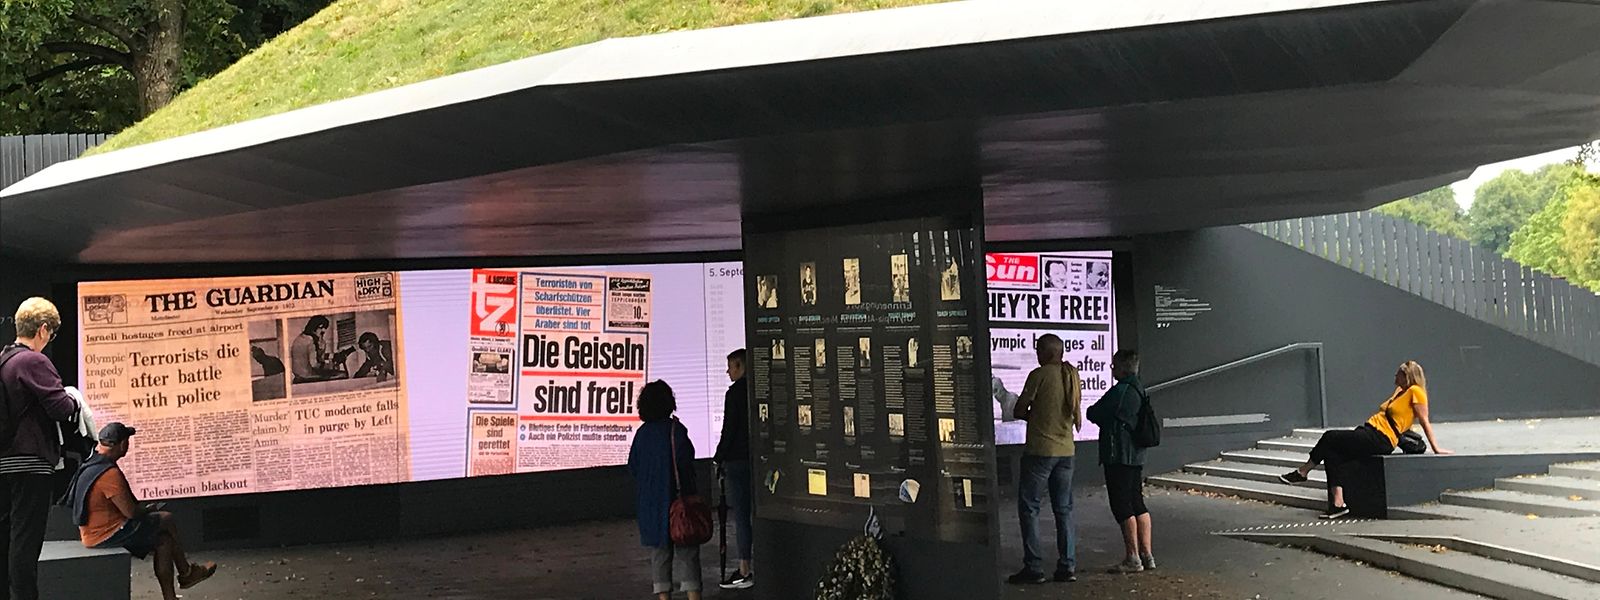 Falschmeldung: „Sie sind frei!“ schrieben die britische „Sun“ und die Münchner „tz“. 50 Jahre nach dem Attentat läuft das kollektive Versagen am „Erinnerungsort“ in Endlosschleife.